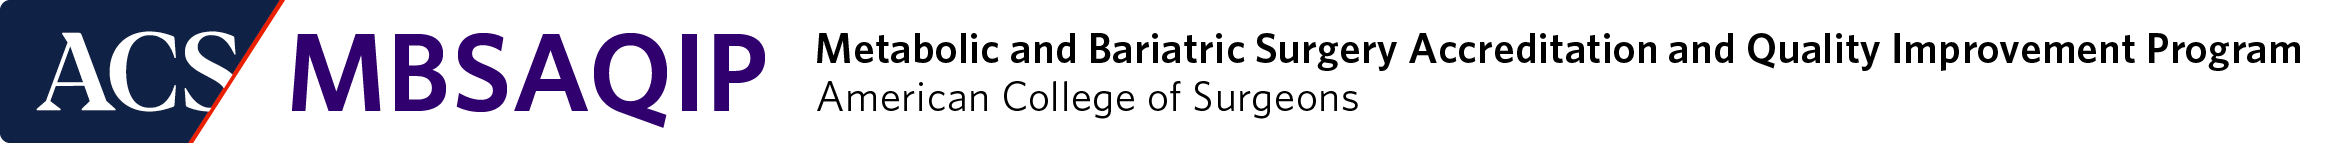 MBSAQIP horizontal logo